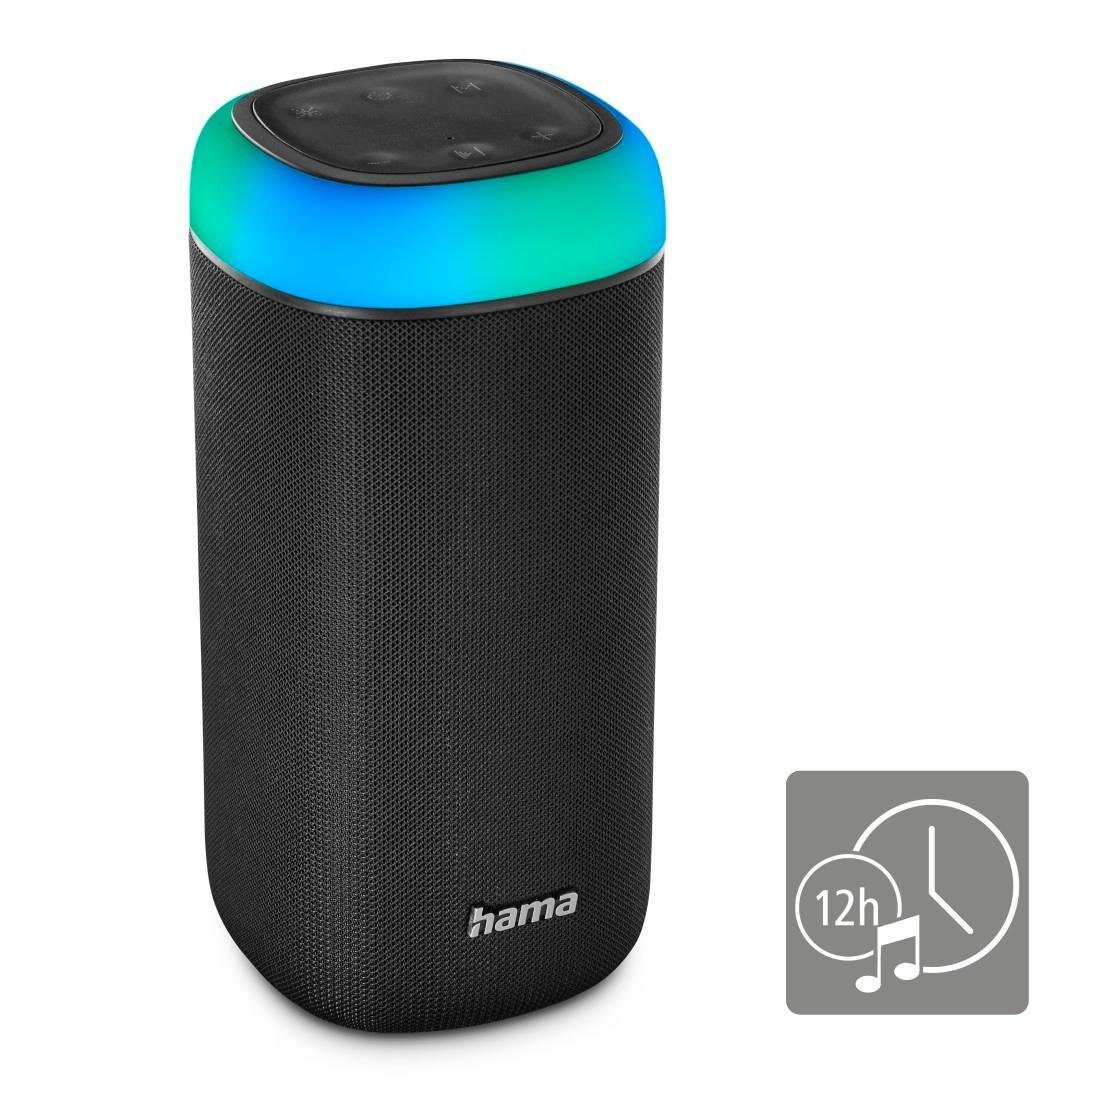 Hama Bluetooth Box spritzwassergeschützt Xtra 2.0 Bass LED schwarz Shine 360ᵒ Sound Bass,360ᵒ Bluetooth-Lautsprecher Sound) (Freisprechanlage,Xtra